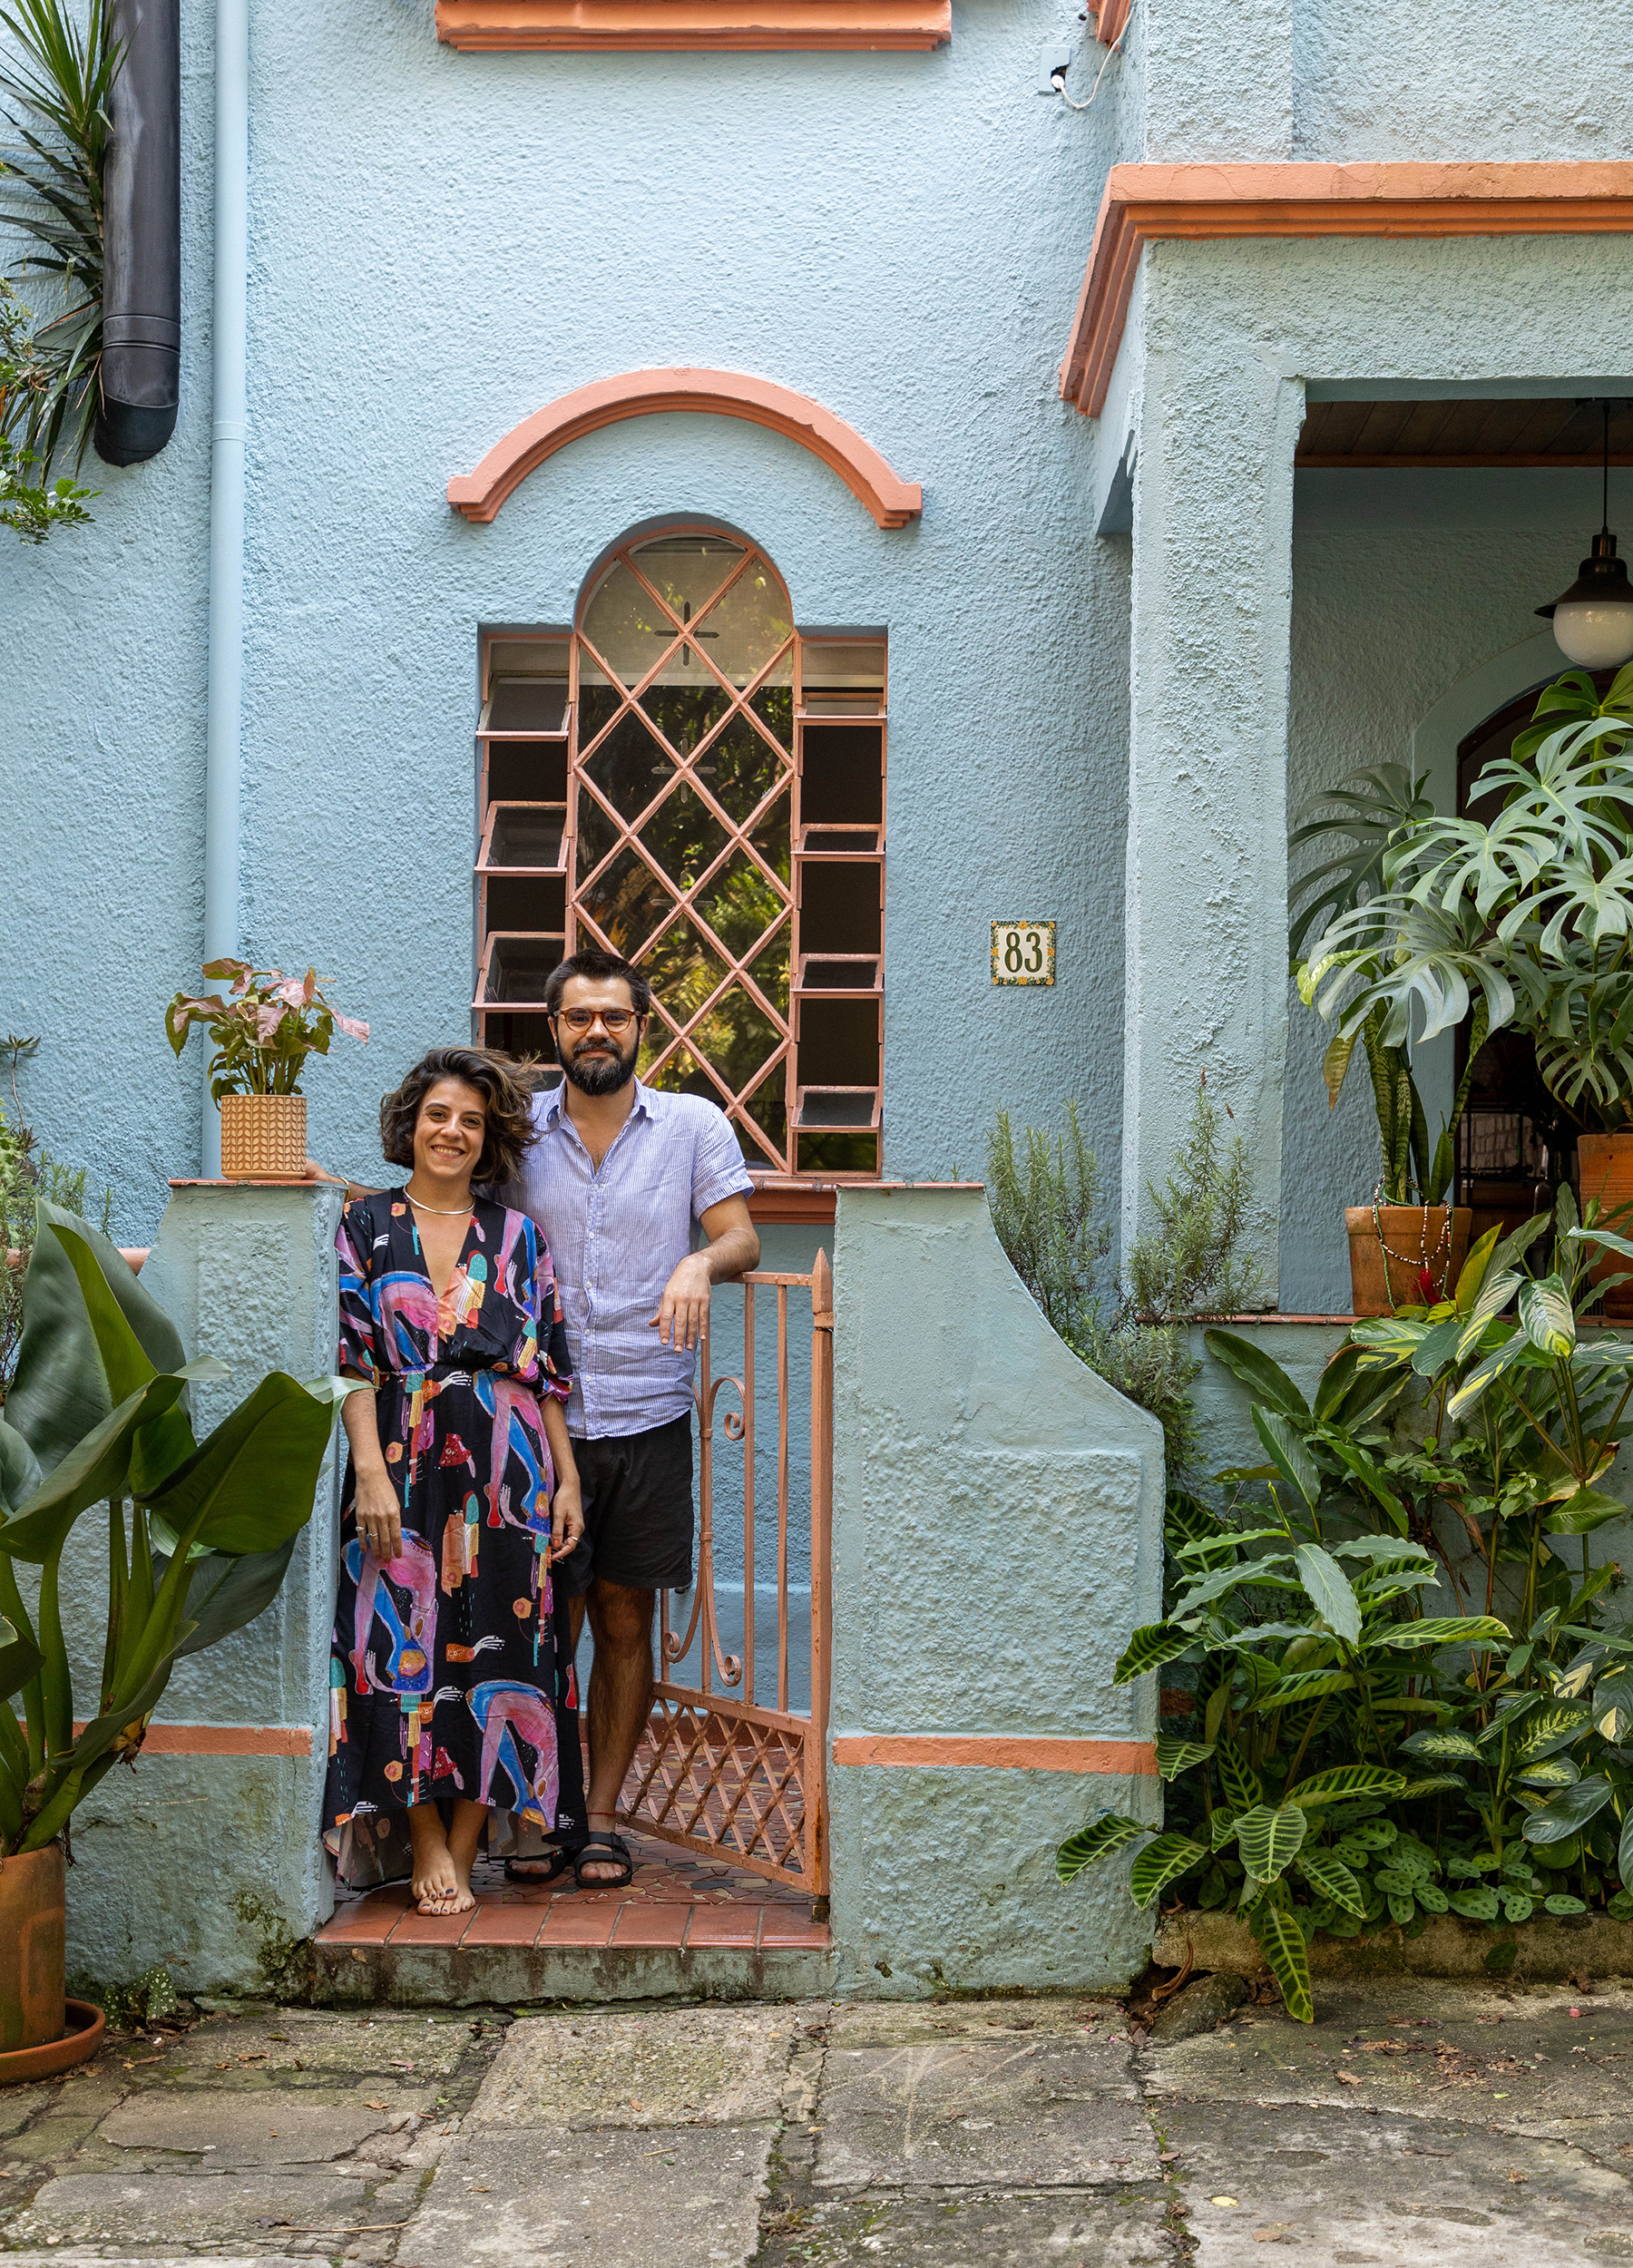 Casa de vila colorida com decoração afetiva, plantas e objetos da loja Casaquetem